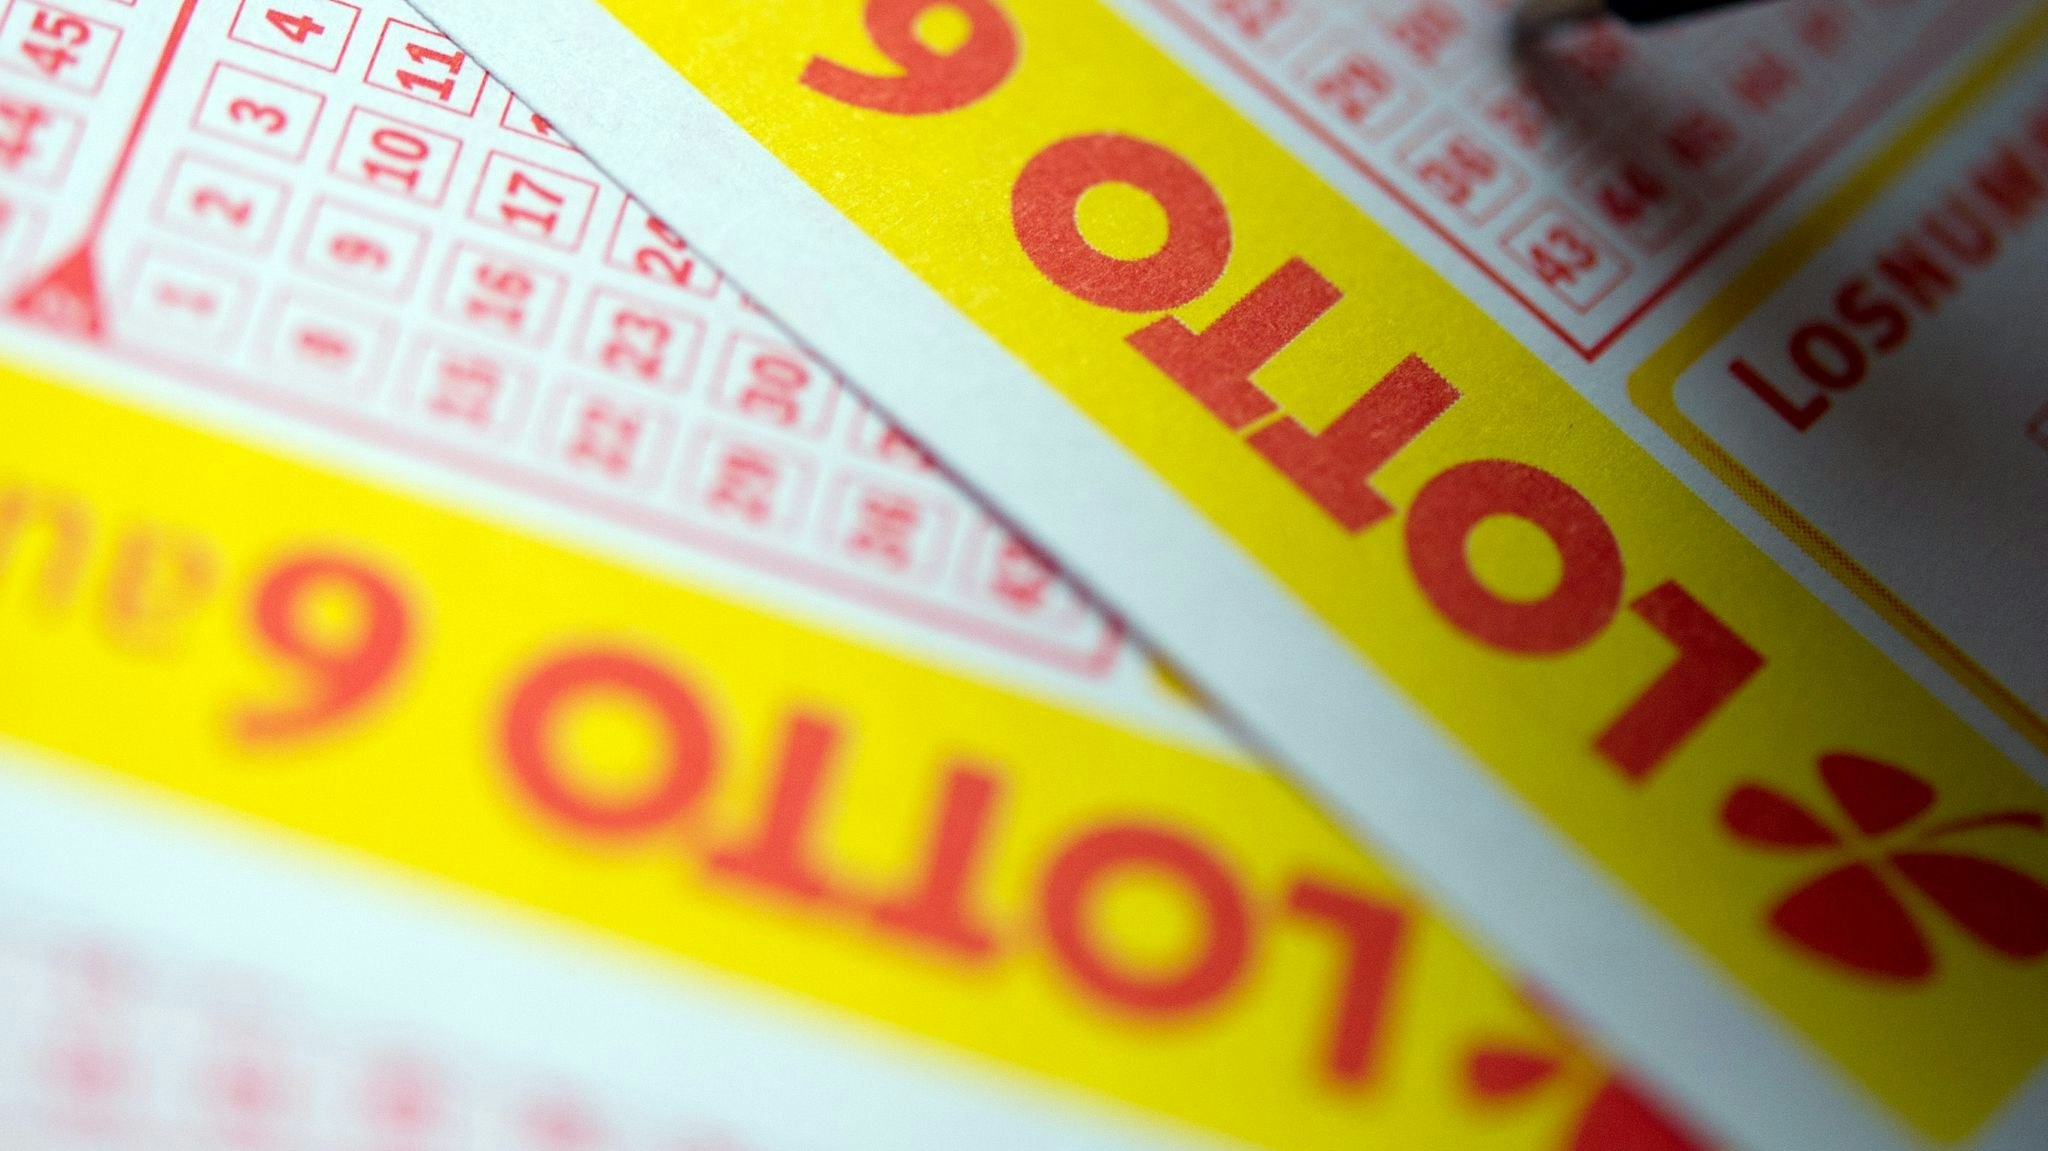 Lottoglück in Niedersachsen: Im Kreis Diepholz gewann am vergangenen Samstag ein Lottospieler mehr als 3,8 Millionen Euro. Foto. dpa